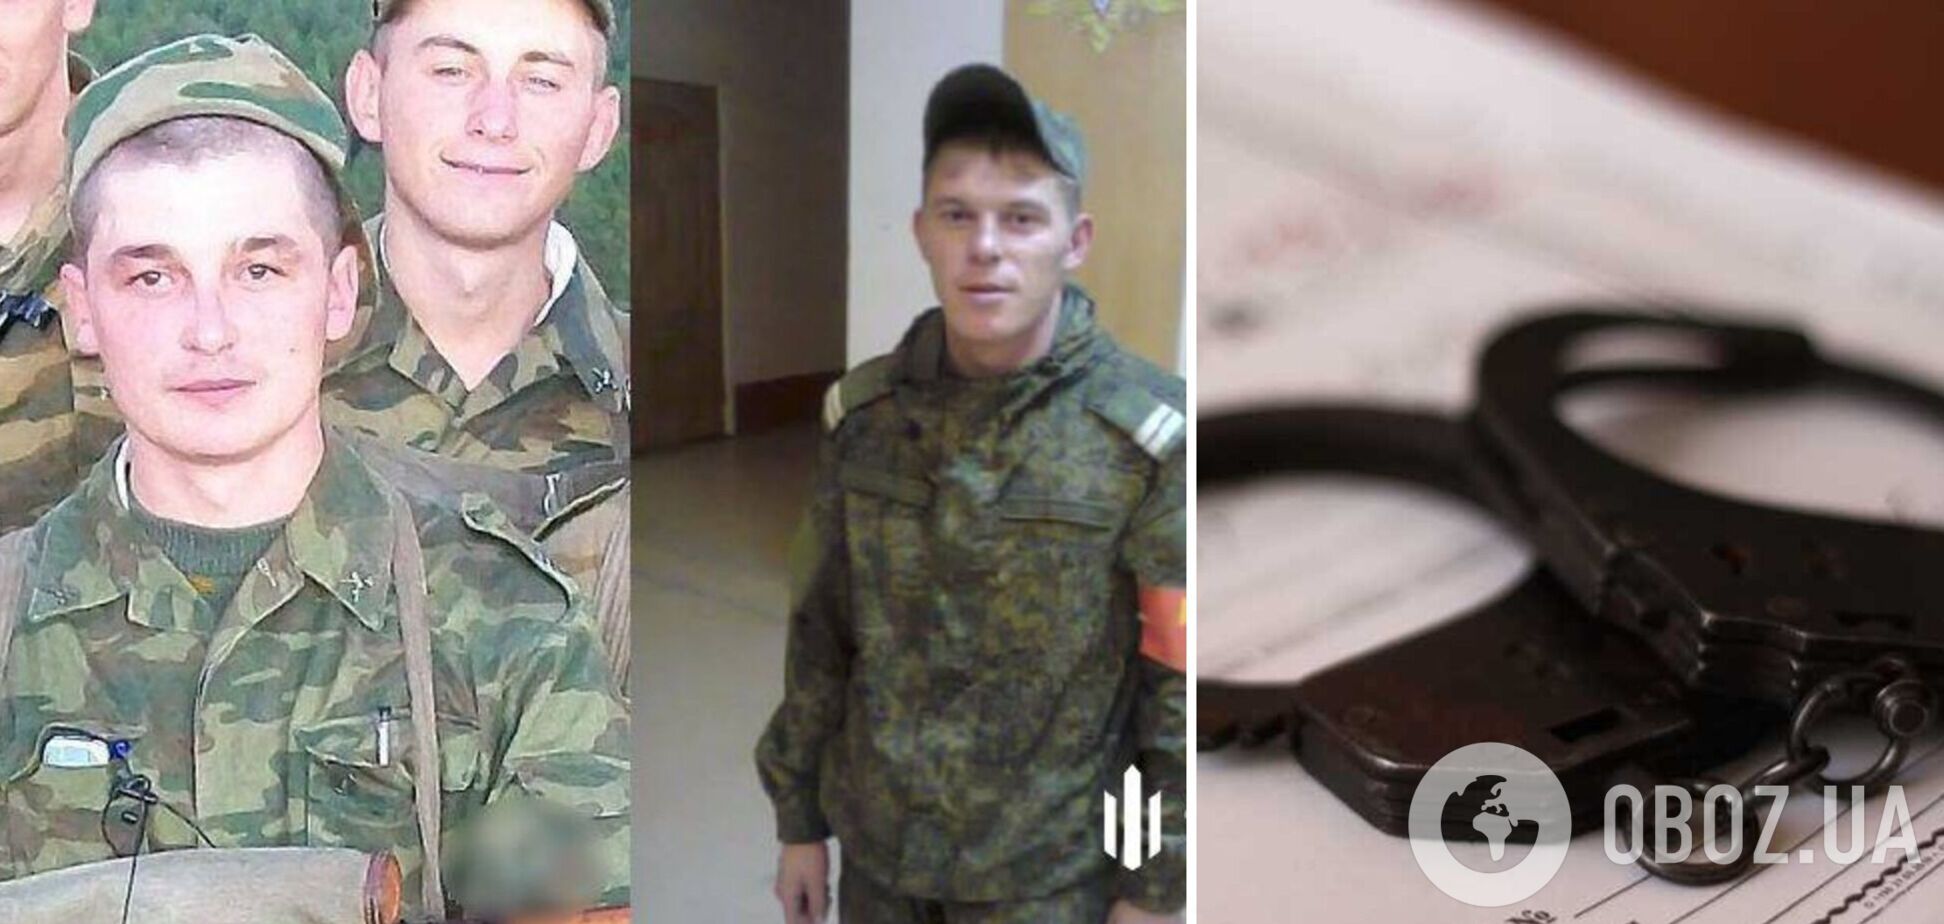 ДБР оголосило підозру двом російським окупантам, які тероризували цивільних у Бородянці та Макарові. Фото